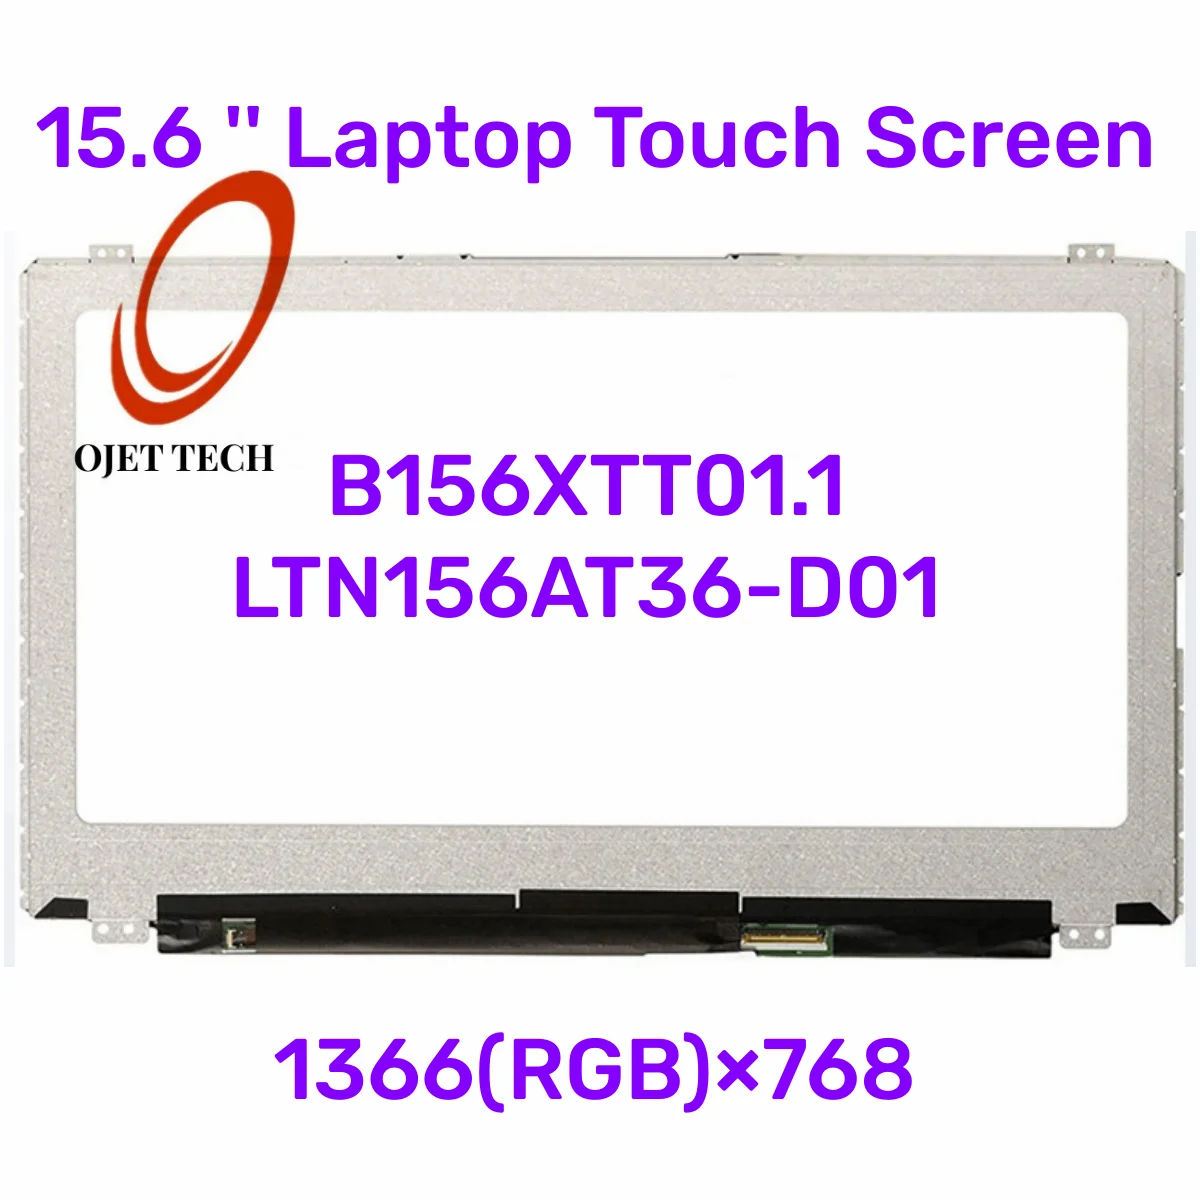 

15.6 '' Laptop Touch Screen B156XTT01.1 LTN156AT36-D01 for Dell Inspiron 3000 Series 15-3541, 3542, 3543, 5547, 5548